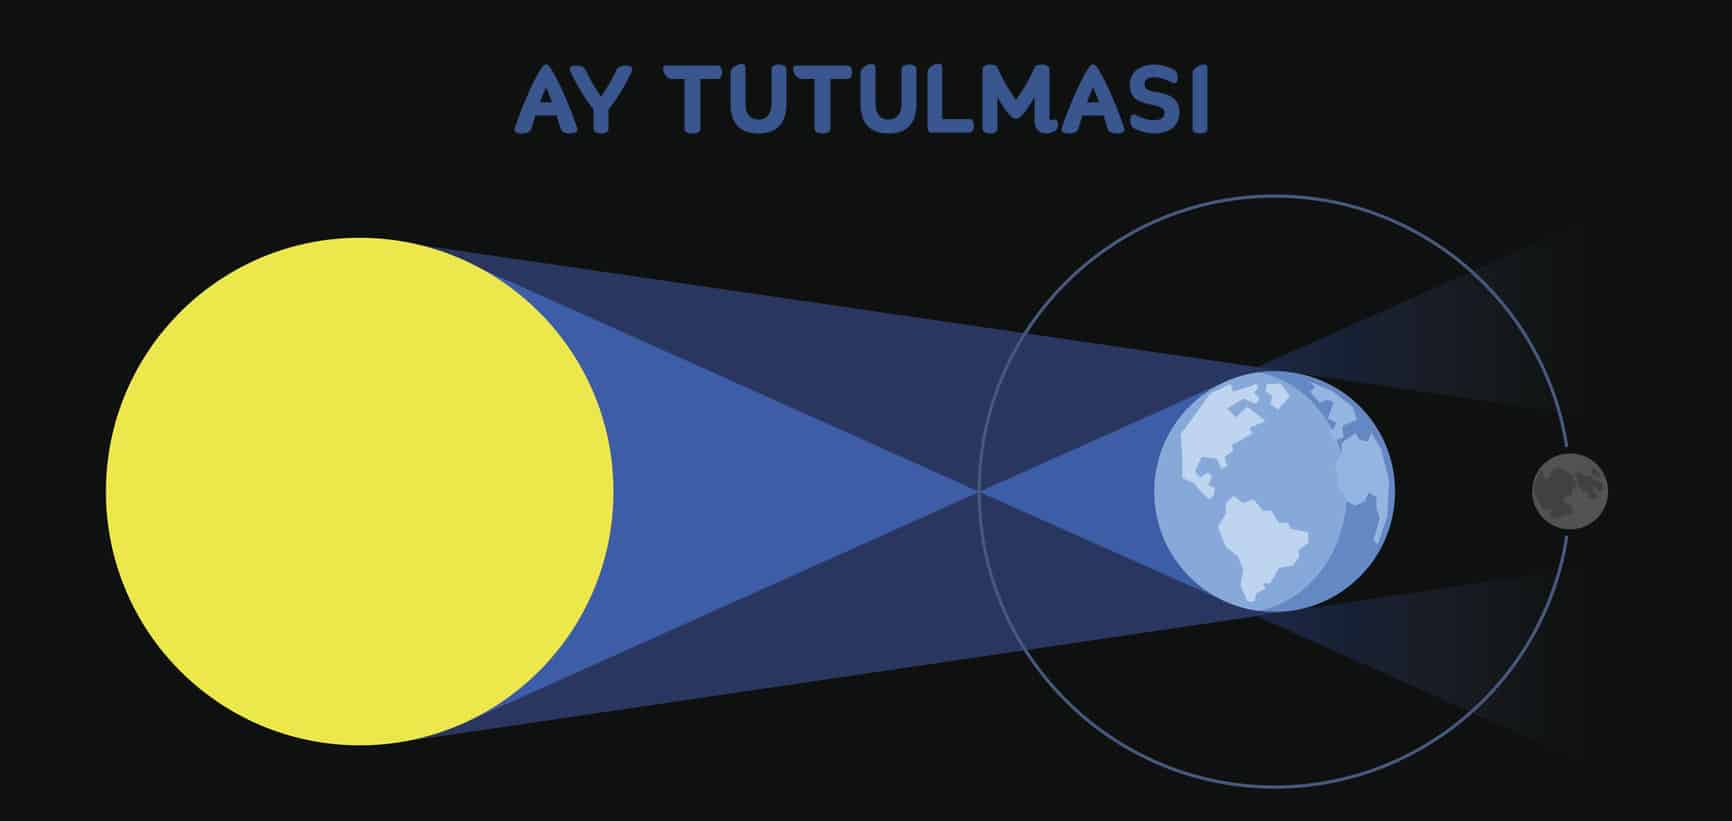 ay tutulmasi nasil gerceklesir 0 Ay tutulması ne zaman gerçekleşecek? Türkiye’den izlenebilecek mi?